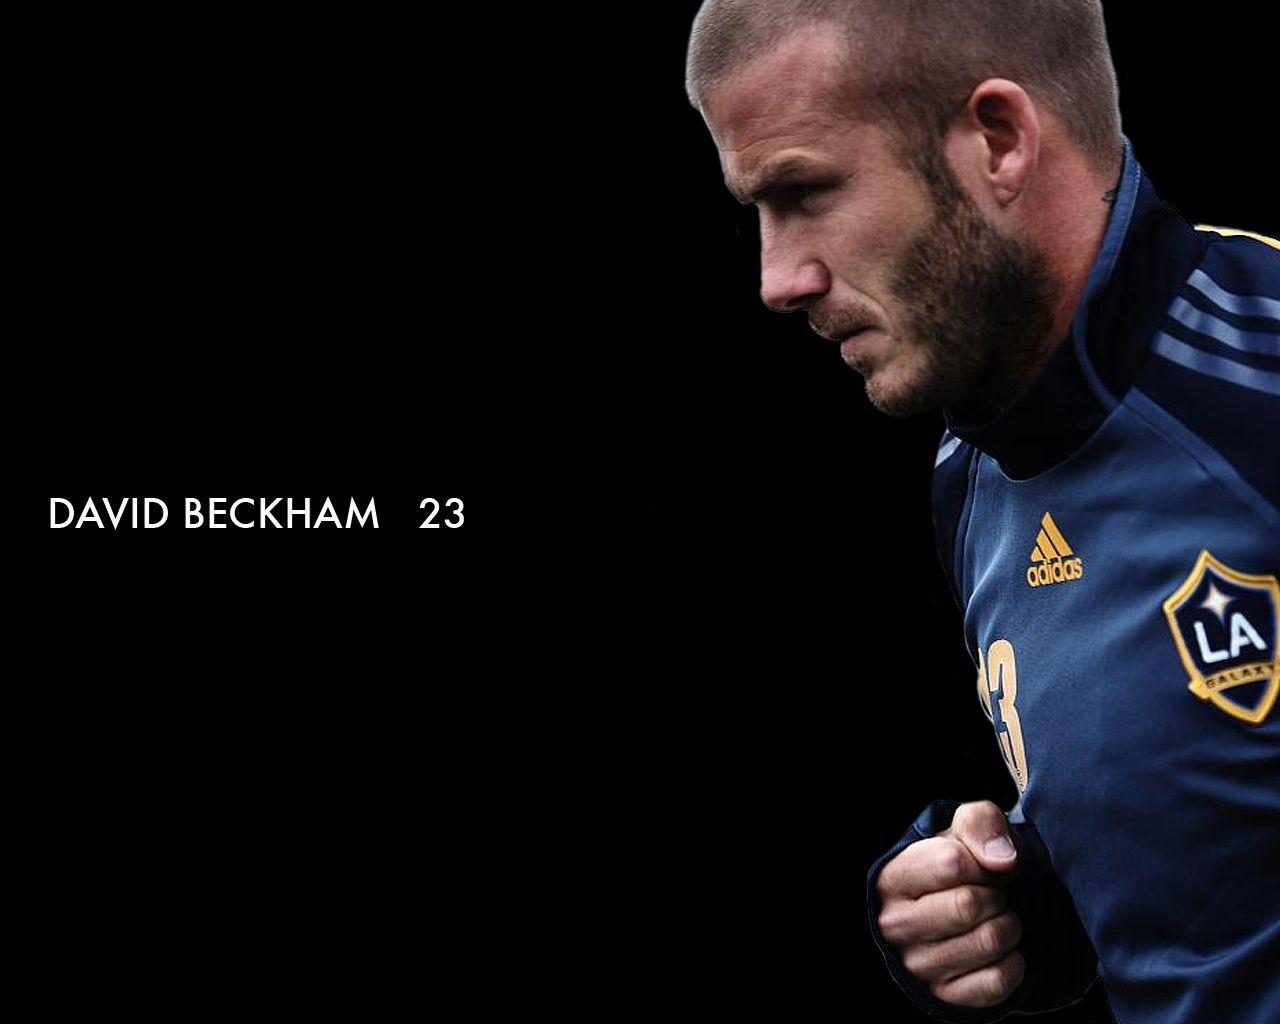 David Beckham Full HD Wallpaper